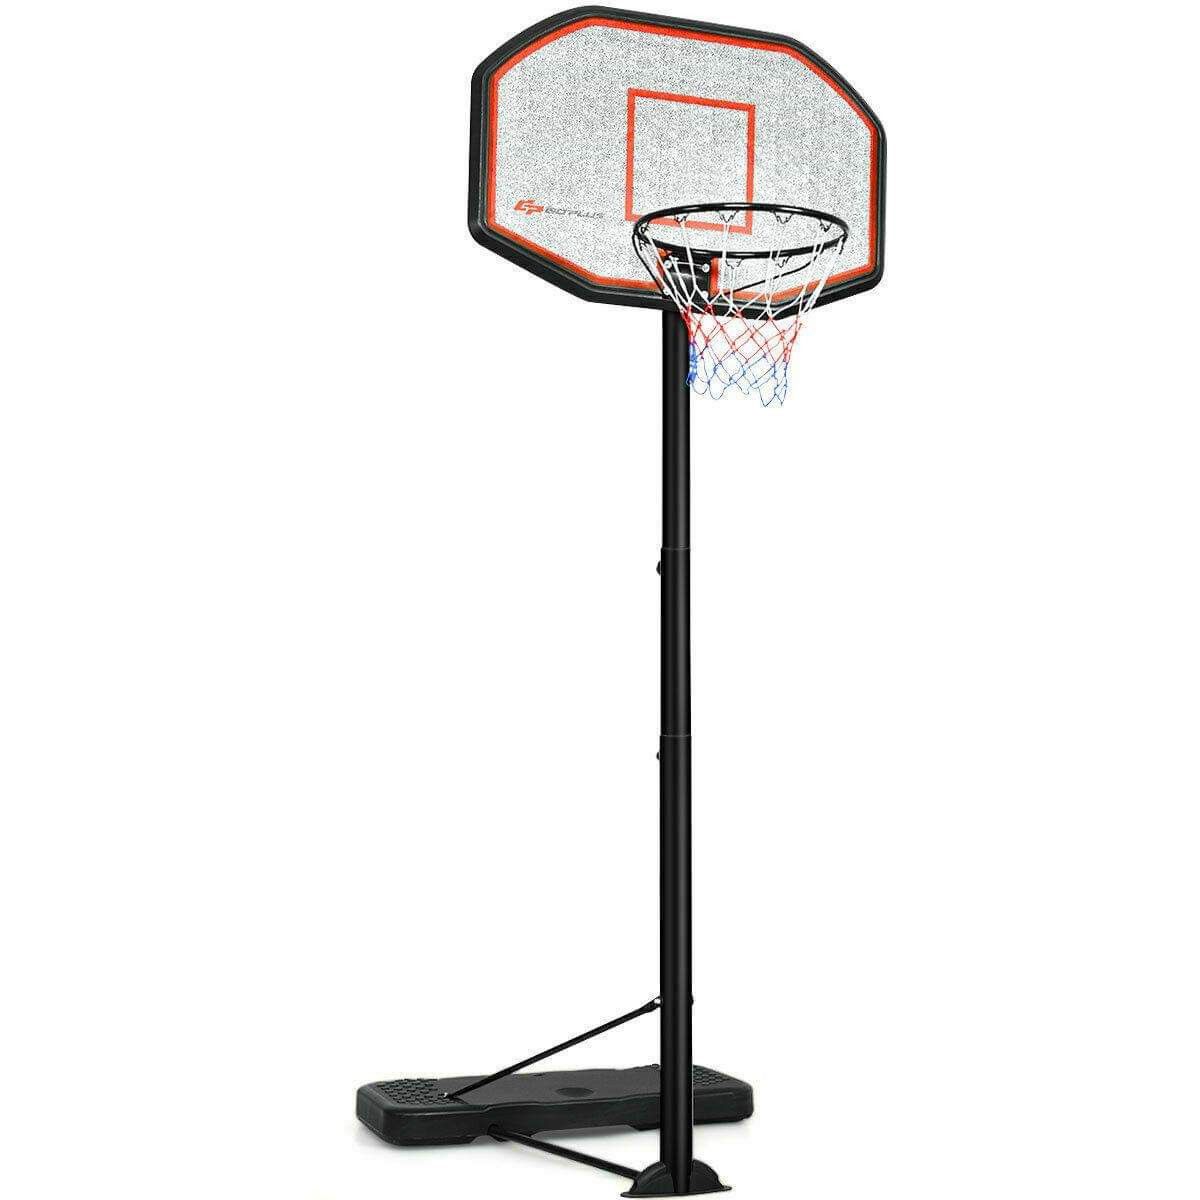 🔥BRAND NEW 10ft 43" BasketBall Adjustable Backboard